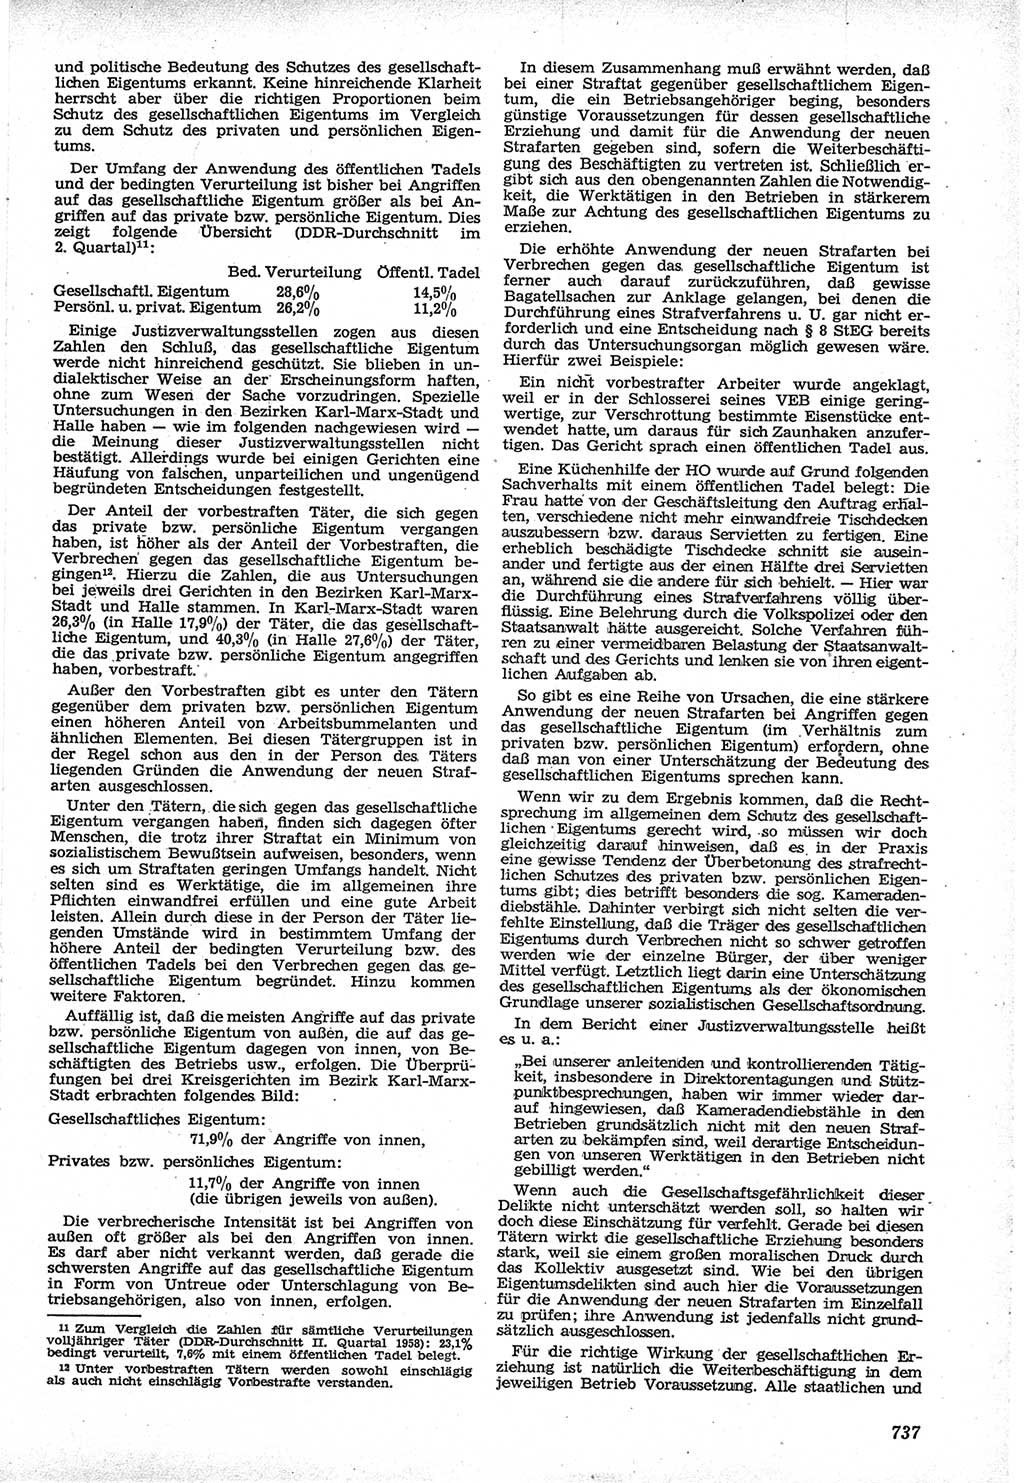 Neue Justiz (NJ), Zeitschrift für Recht und Rechtswissenschaft [Deutsche Demokratische Republik (DDR)], 12. Jahrgang 1958, Seite 737 (NJ DDR 1958, S. 737)